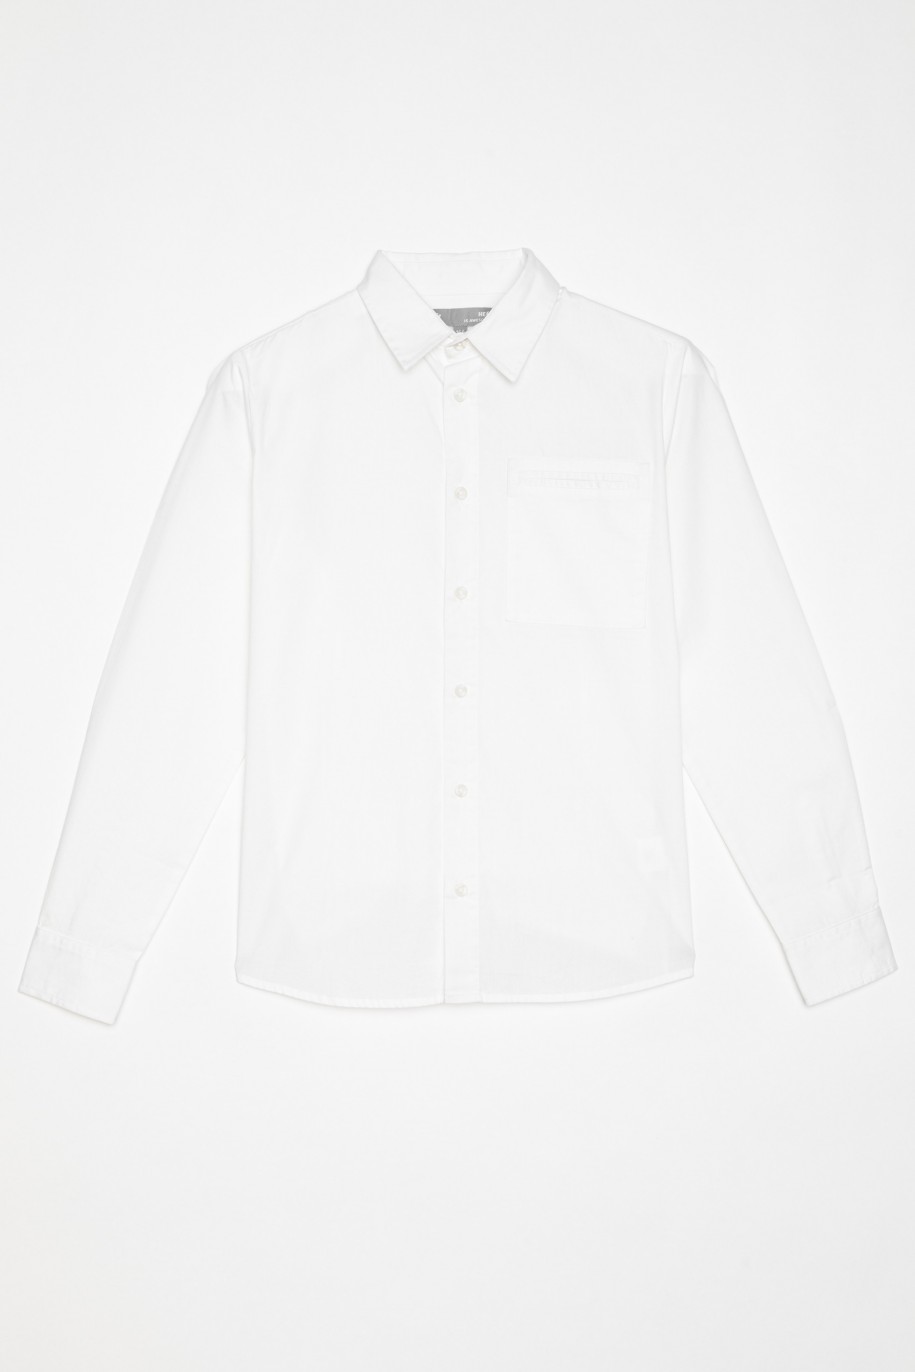 Elegancka biała koszula dla chłopaka - 22236